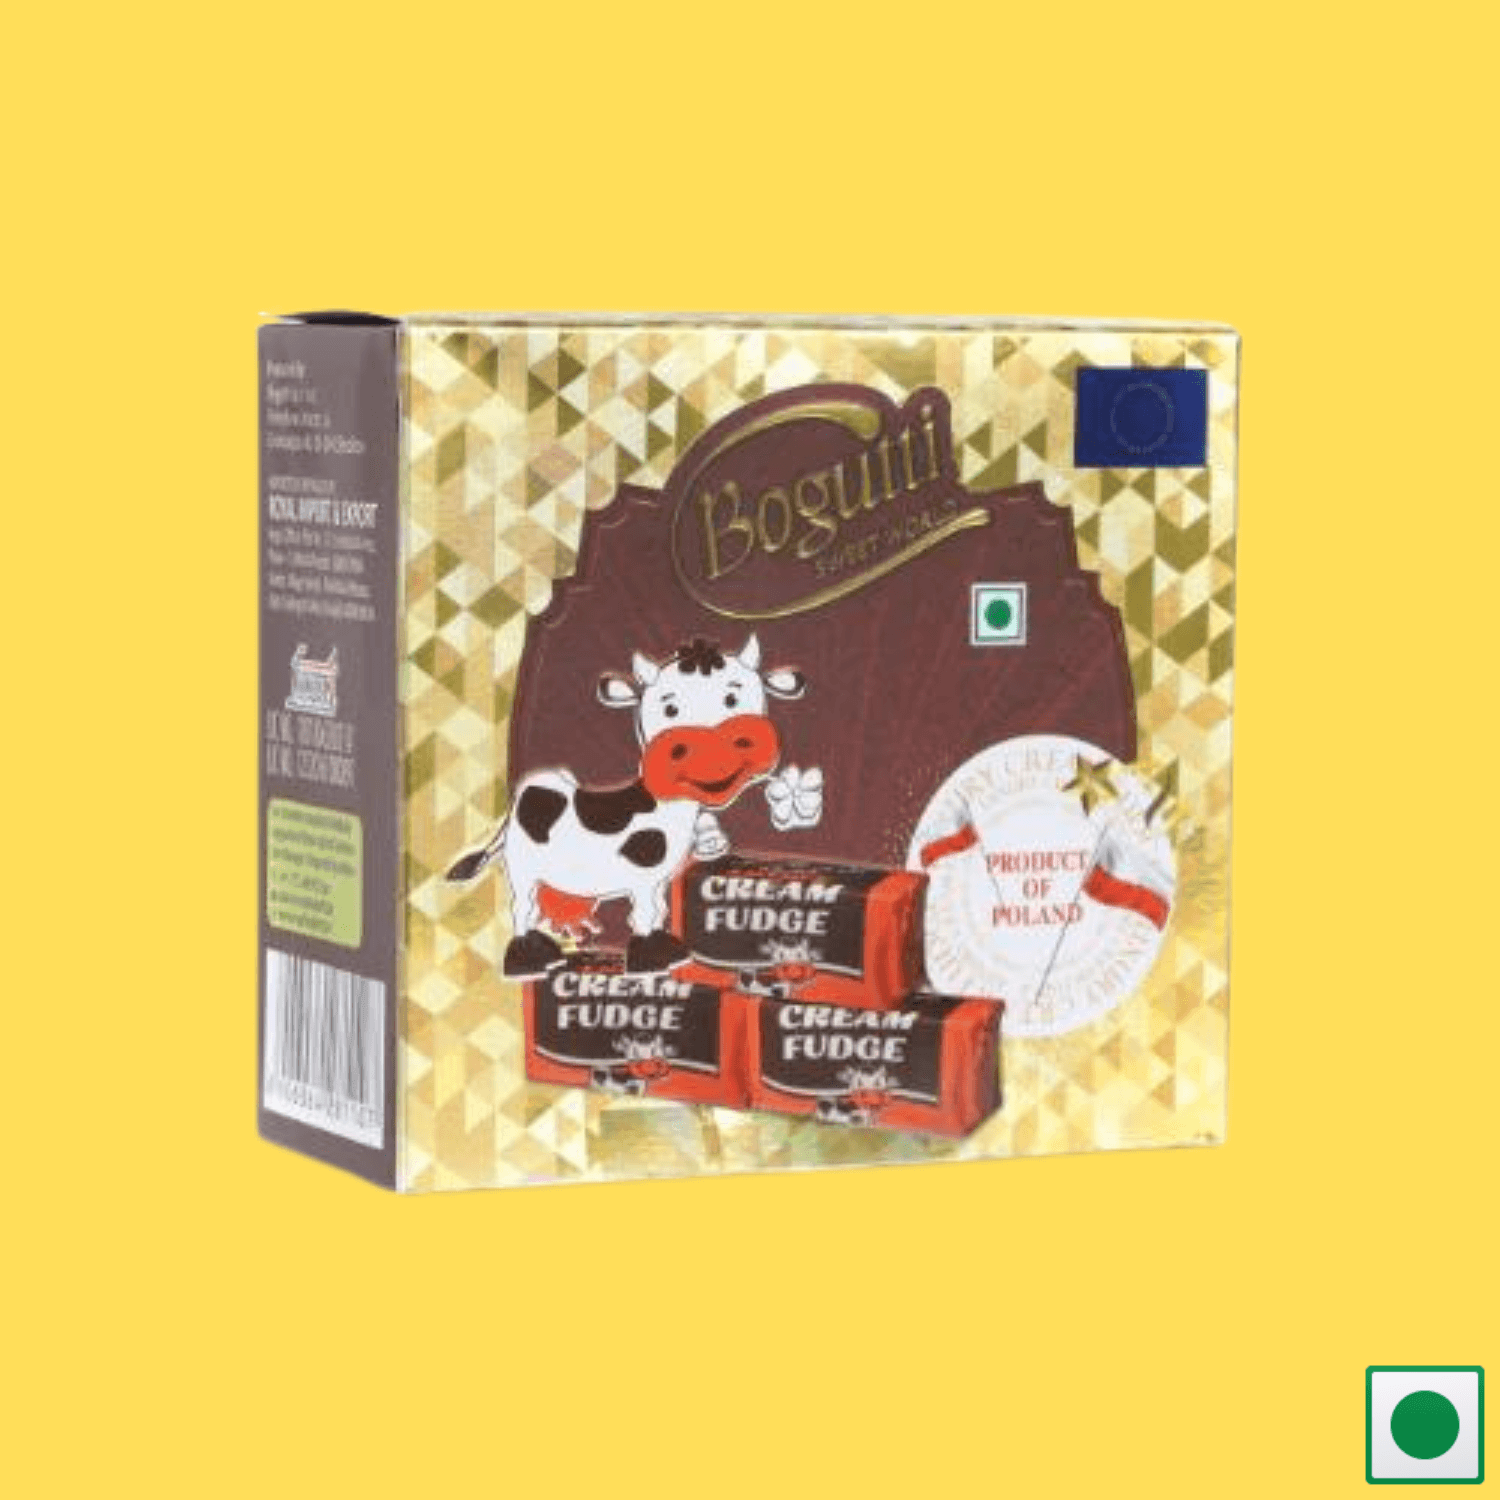 Bogutti Cream Fudge Exclusive Gift Pack, 125g (Imported)